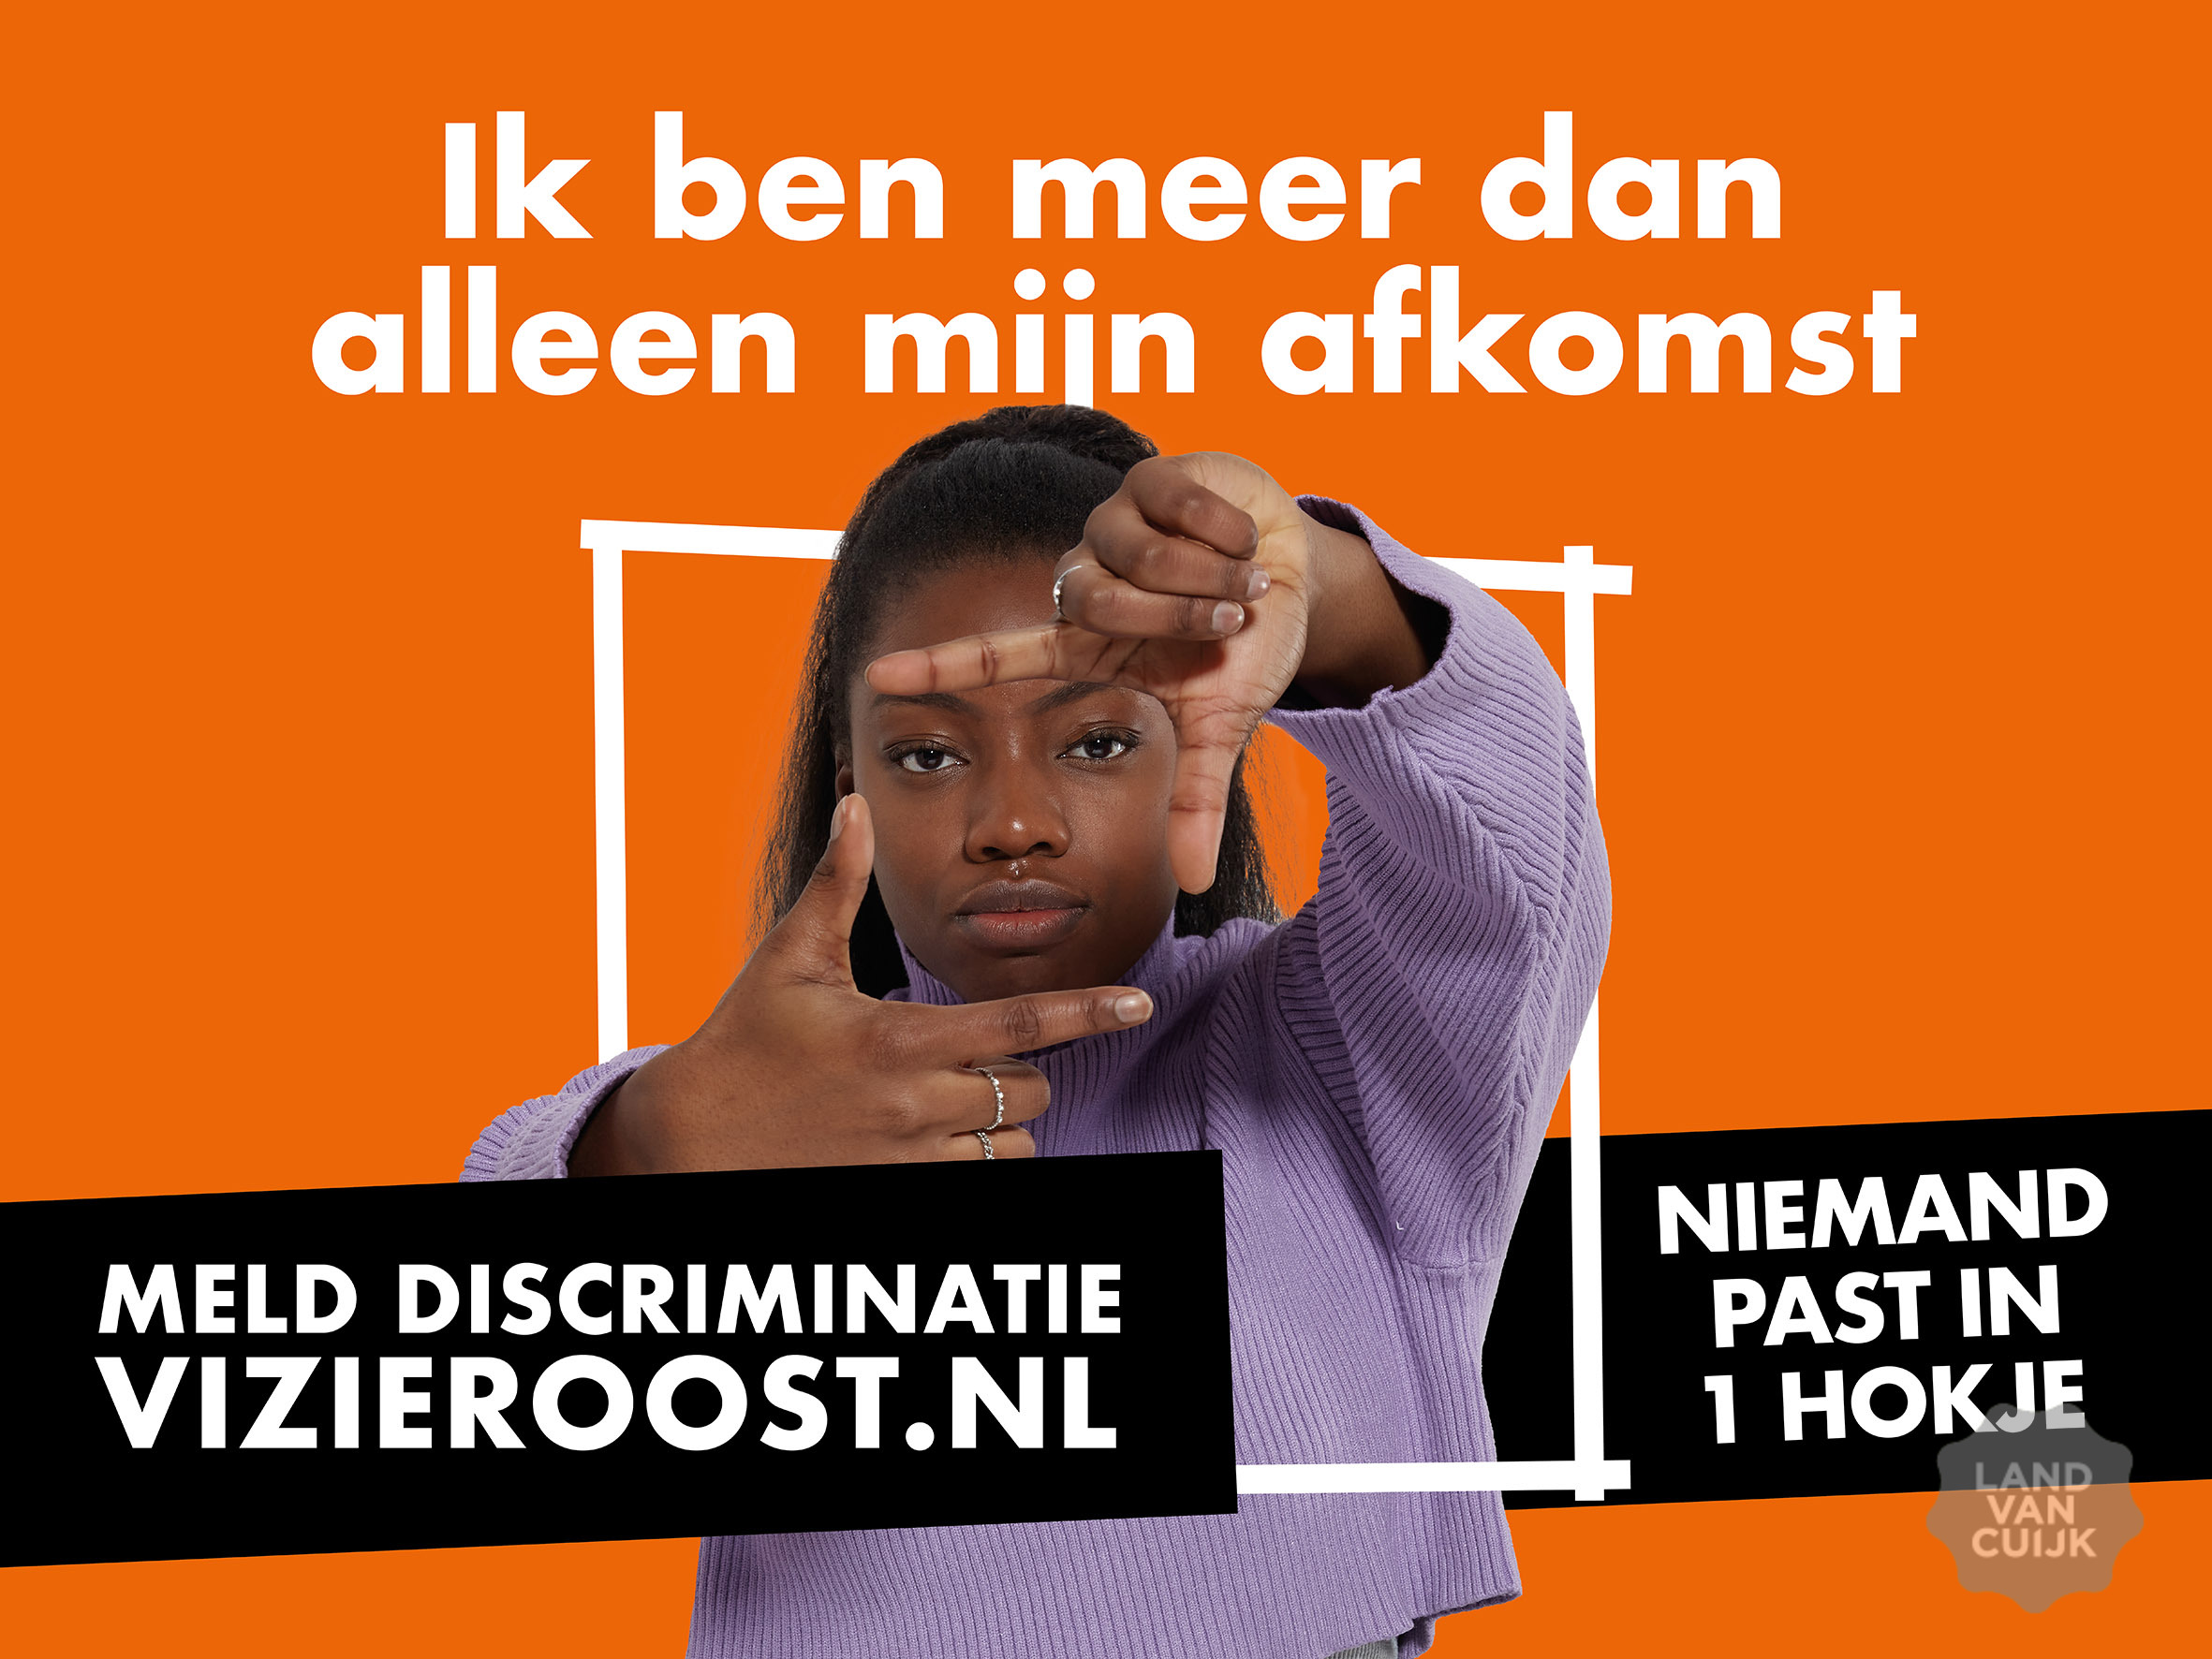 Lancering anti-discriminatiecampagne gemeente Land van Cuijk: Niemand past in 1 hokje